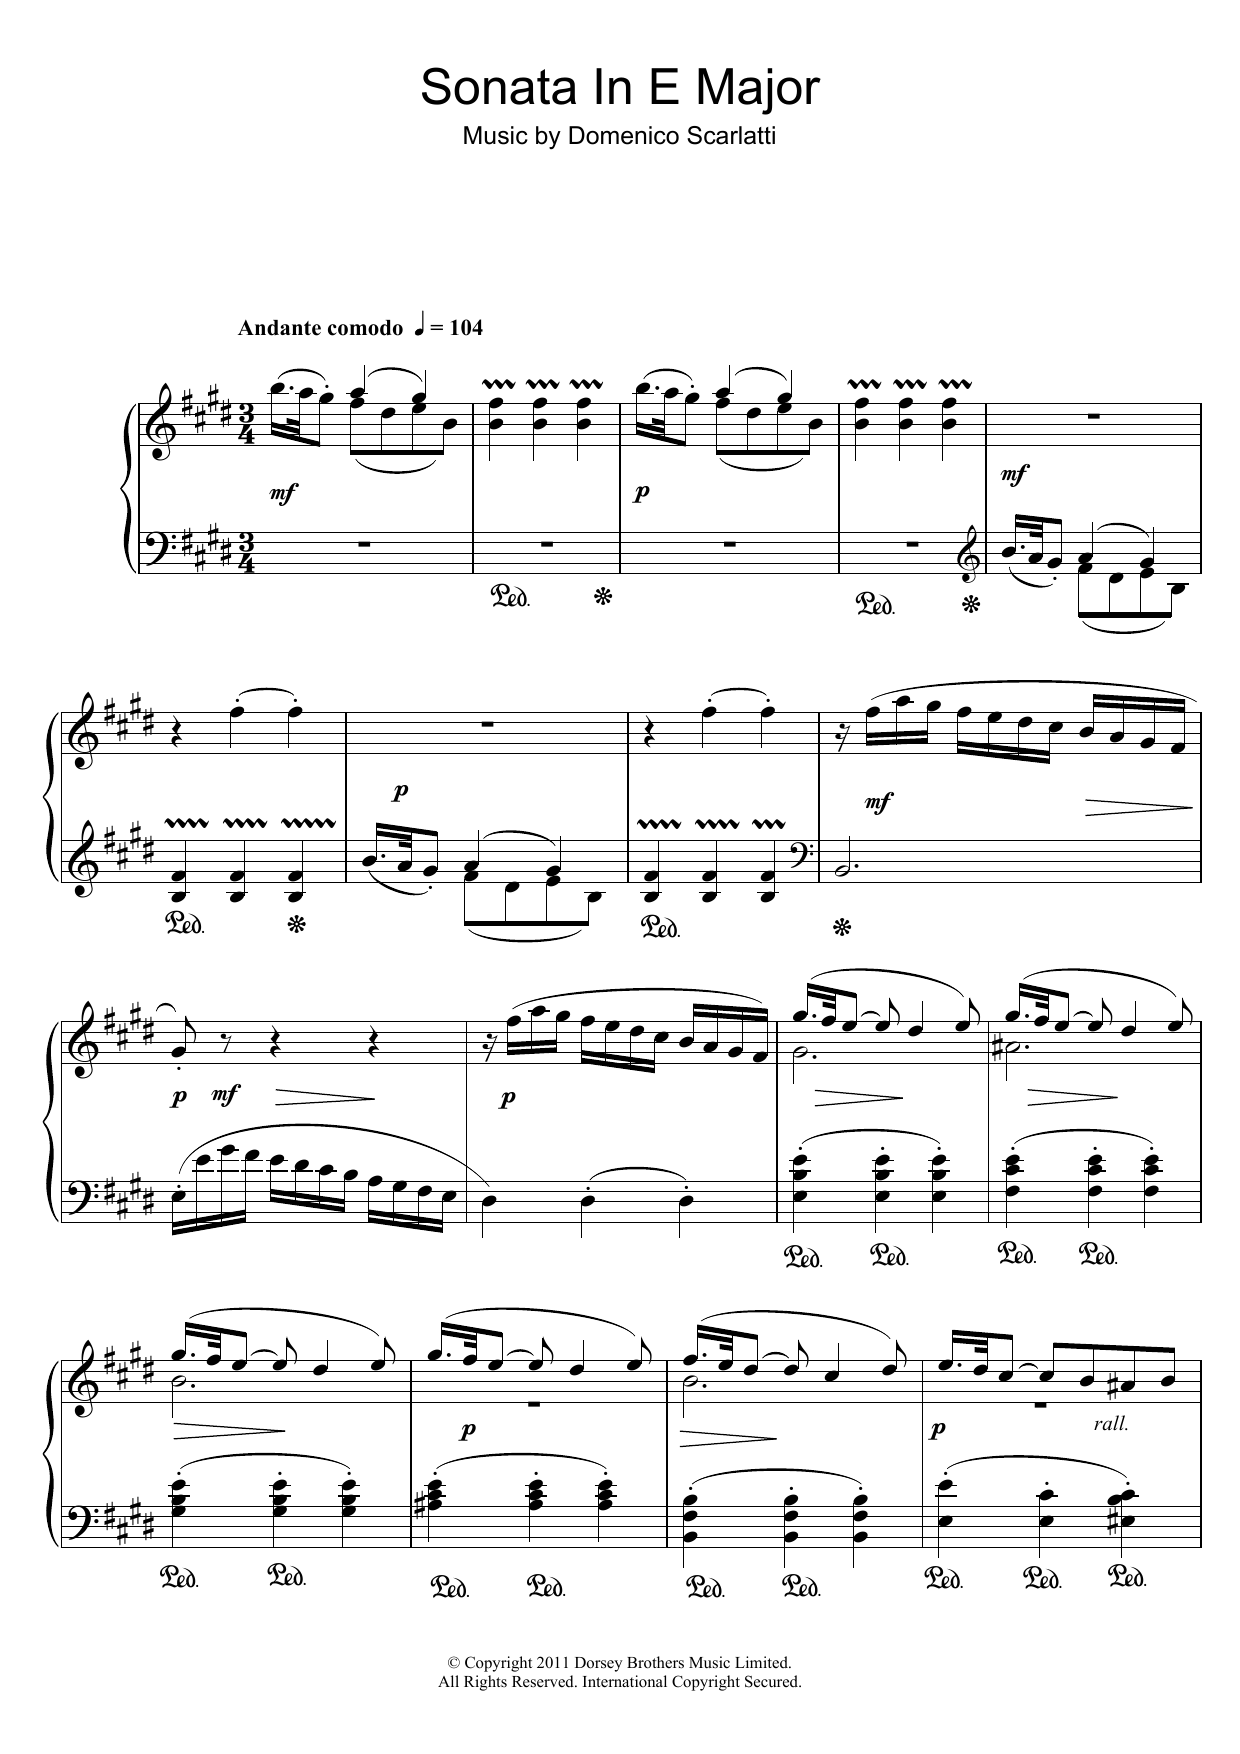 Domenico Scarlatti Sonata In E Major Sheet Music Notes & Chords for Piano - Download or Print PDF